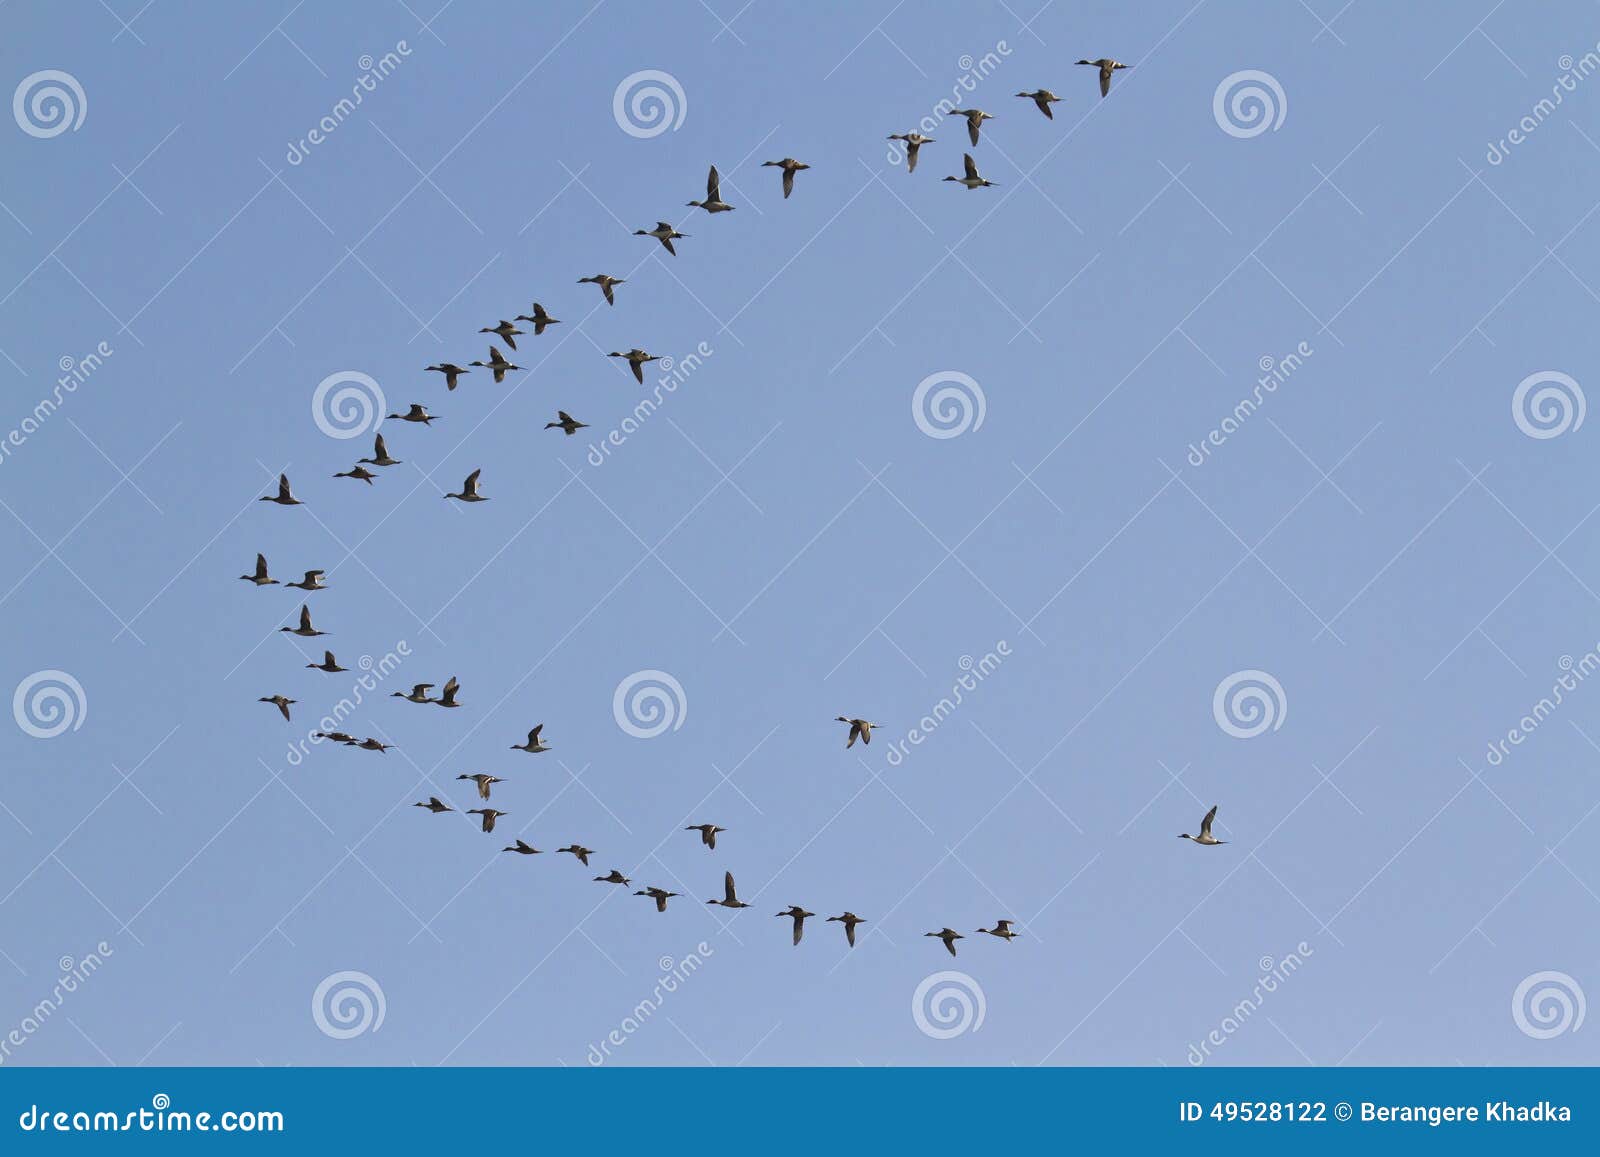 migrating birds flight in bardia, nepal